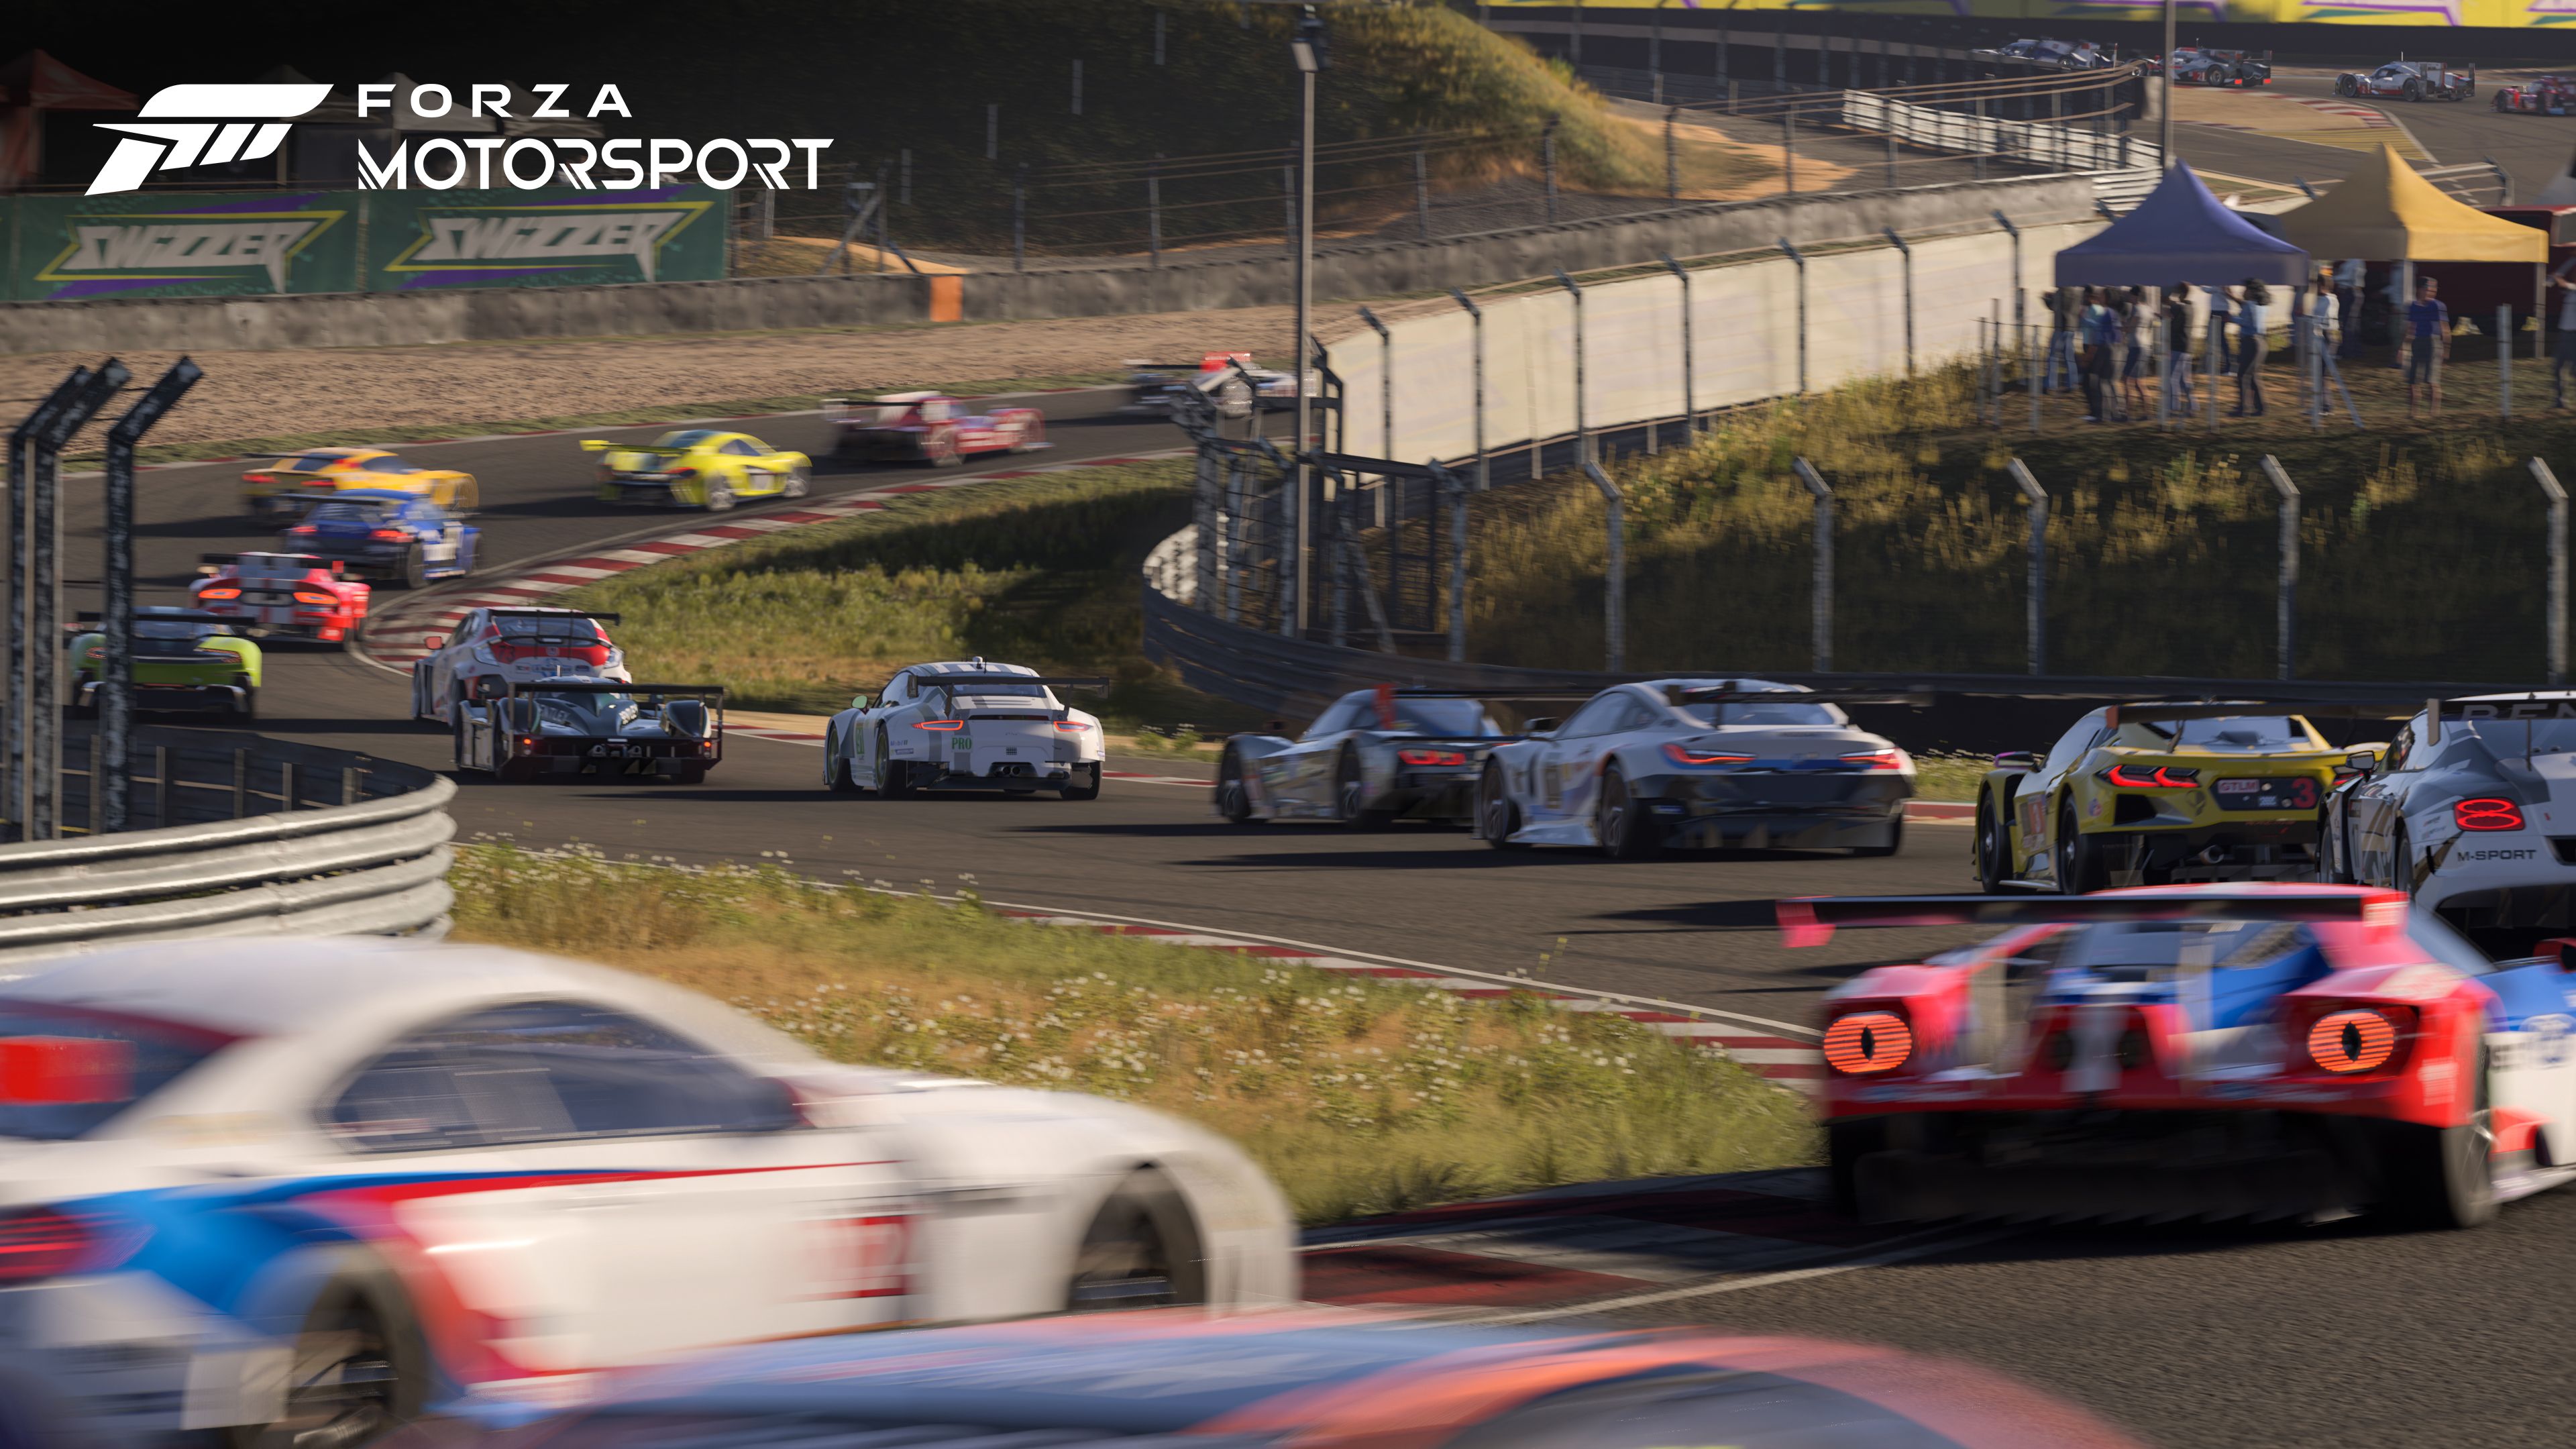 Impresiones de Forza Motorsport, un flamante coche para el exclusivo garaje de Xbox Series X-S